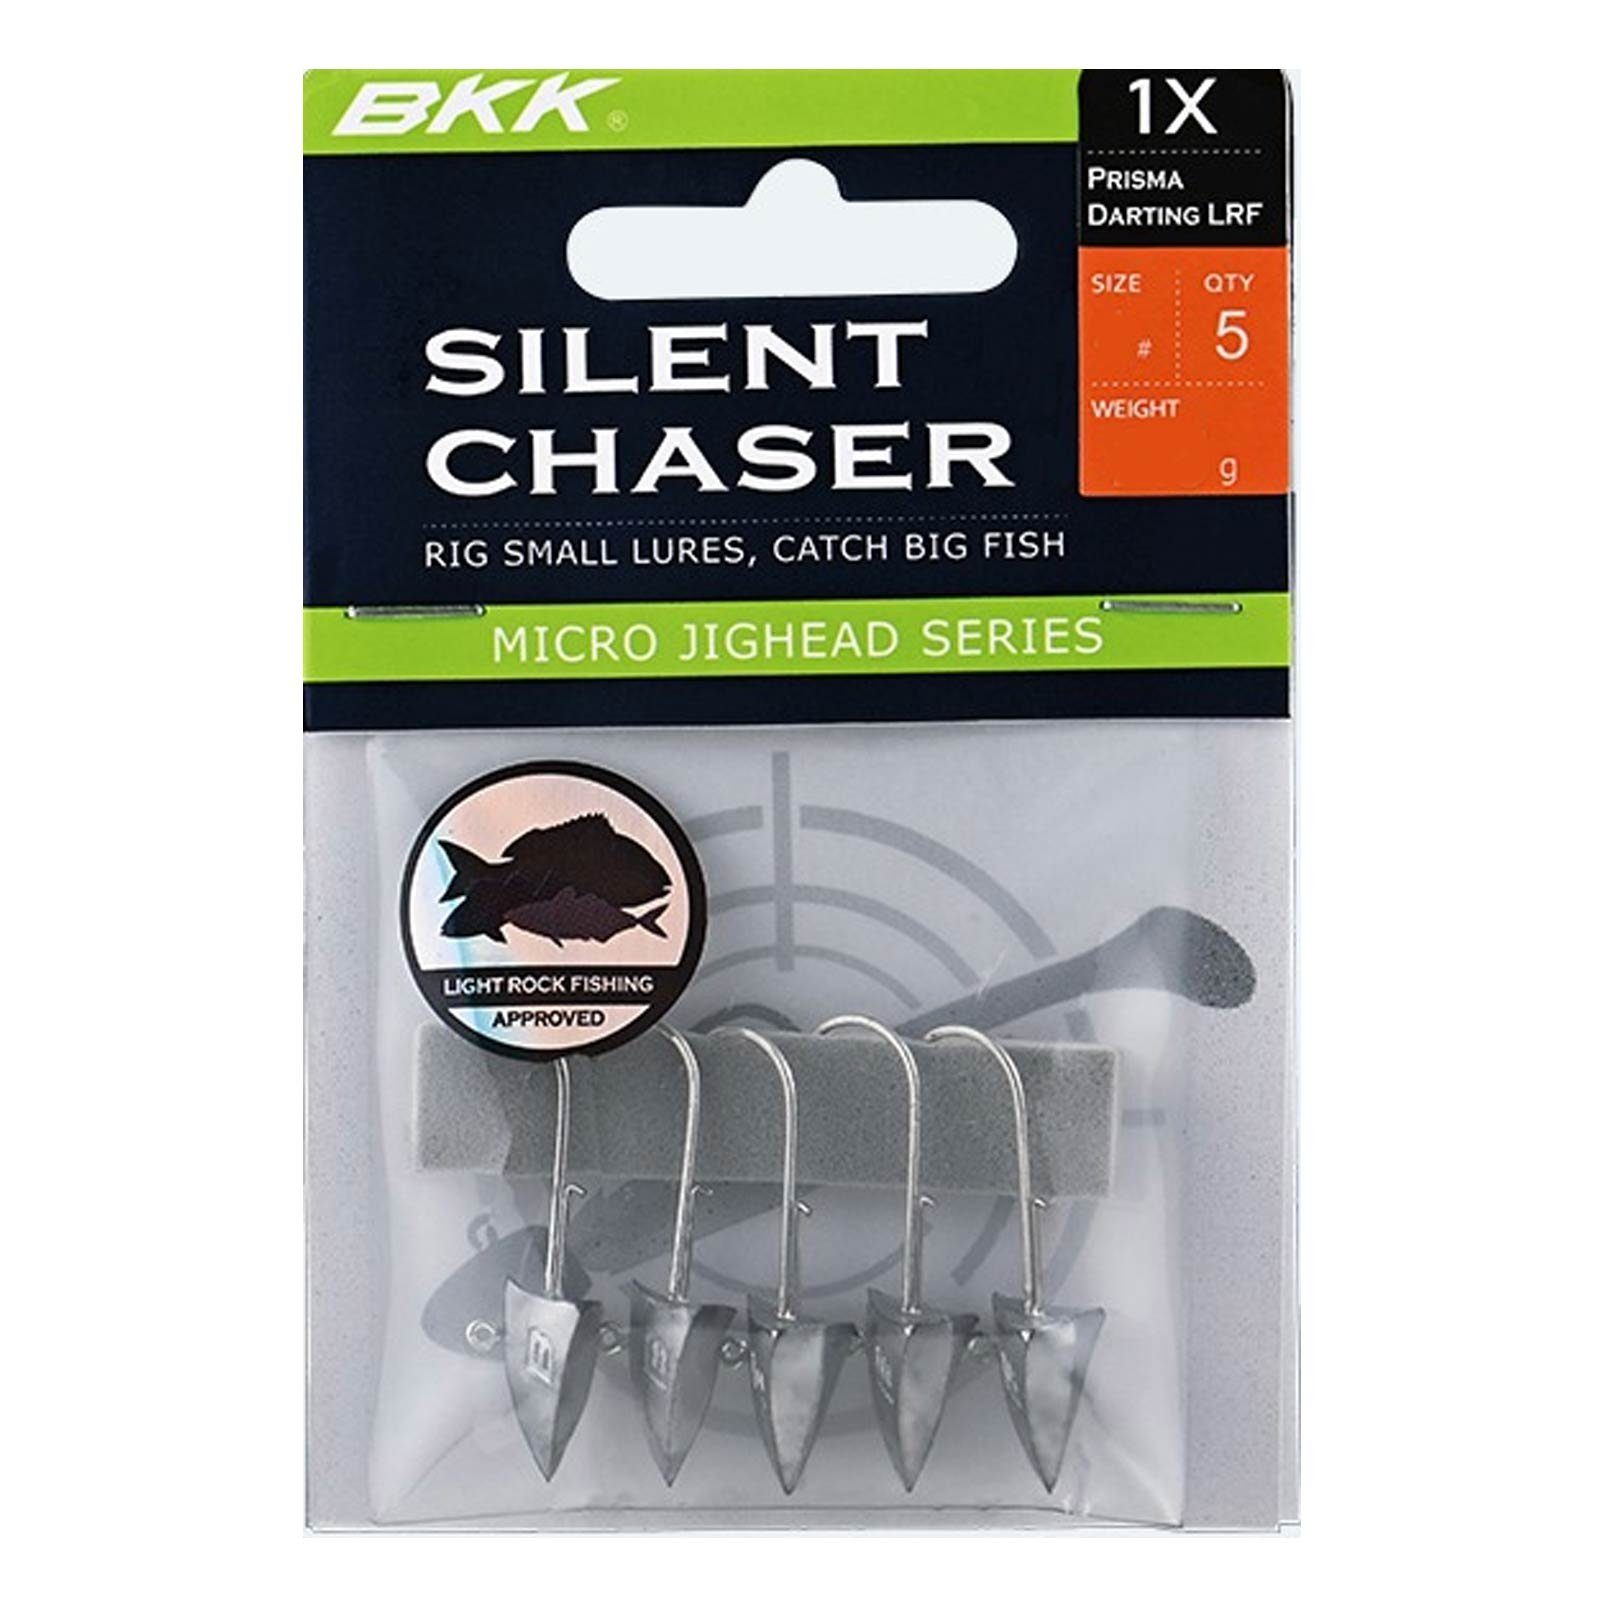 Chaser-Prisma LRF BKK Jighaken, BKK Darting 2# Silent 5,0g Jigkopf